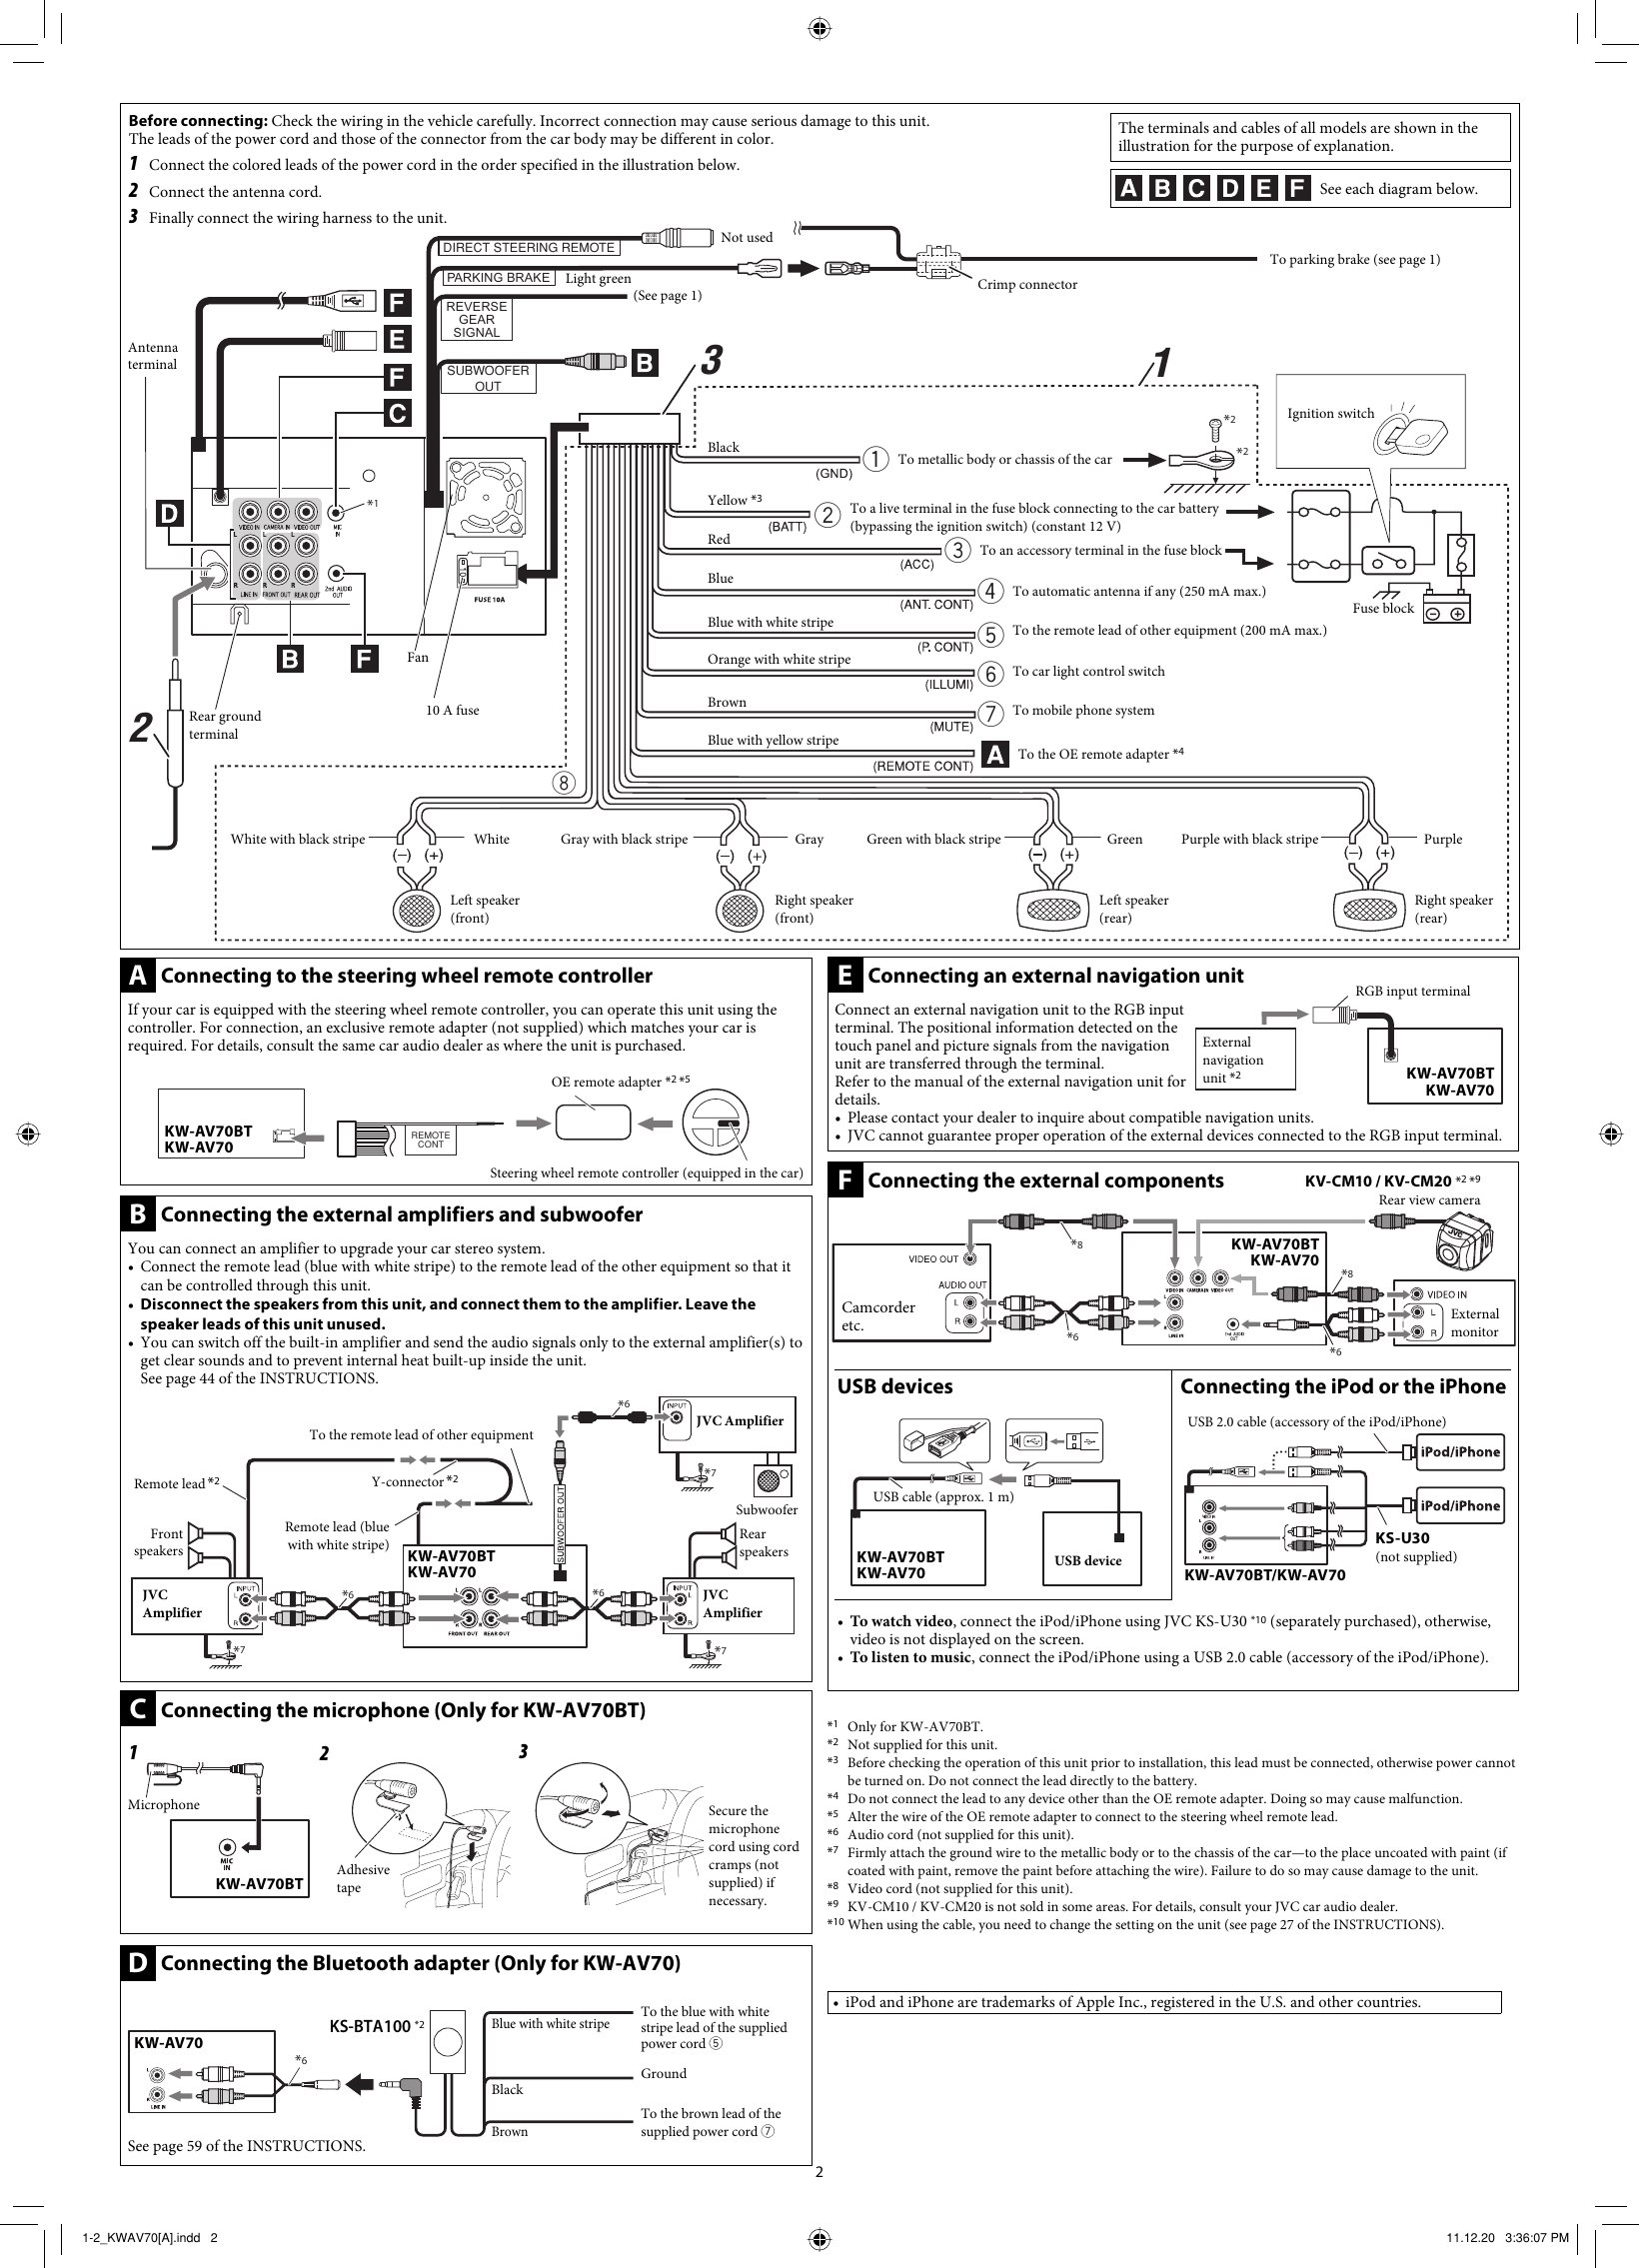 Page 2 of 2 - JVC KW-AV70A KW-AV70BT/KW-AV70[A] User Manual KW-AV70A, KW-AV70BTA LVT2305-002A